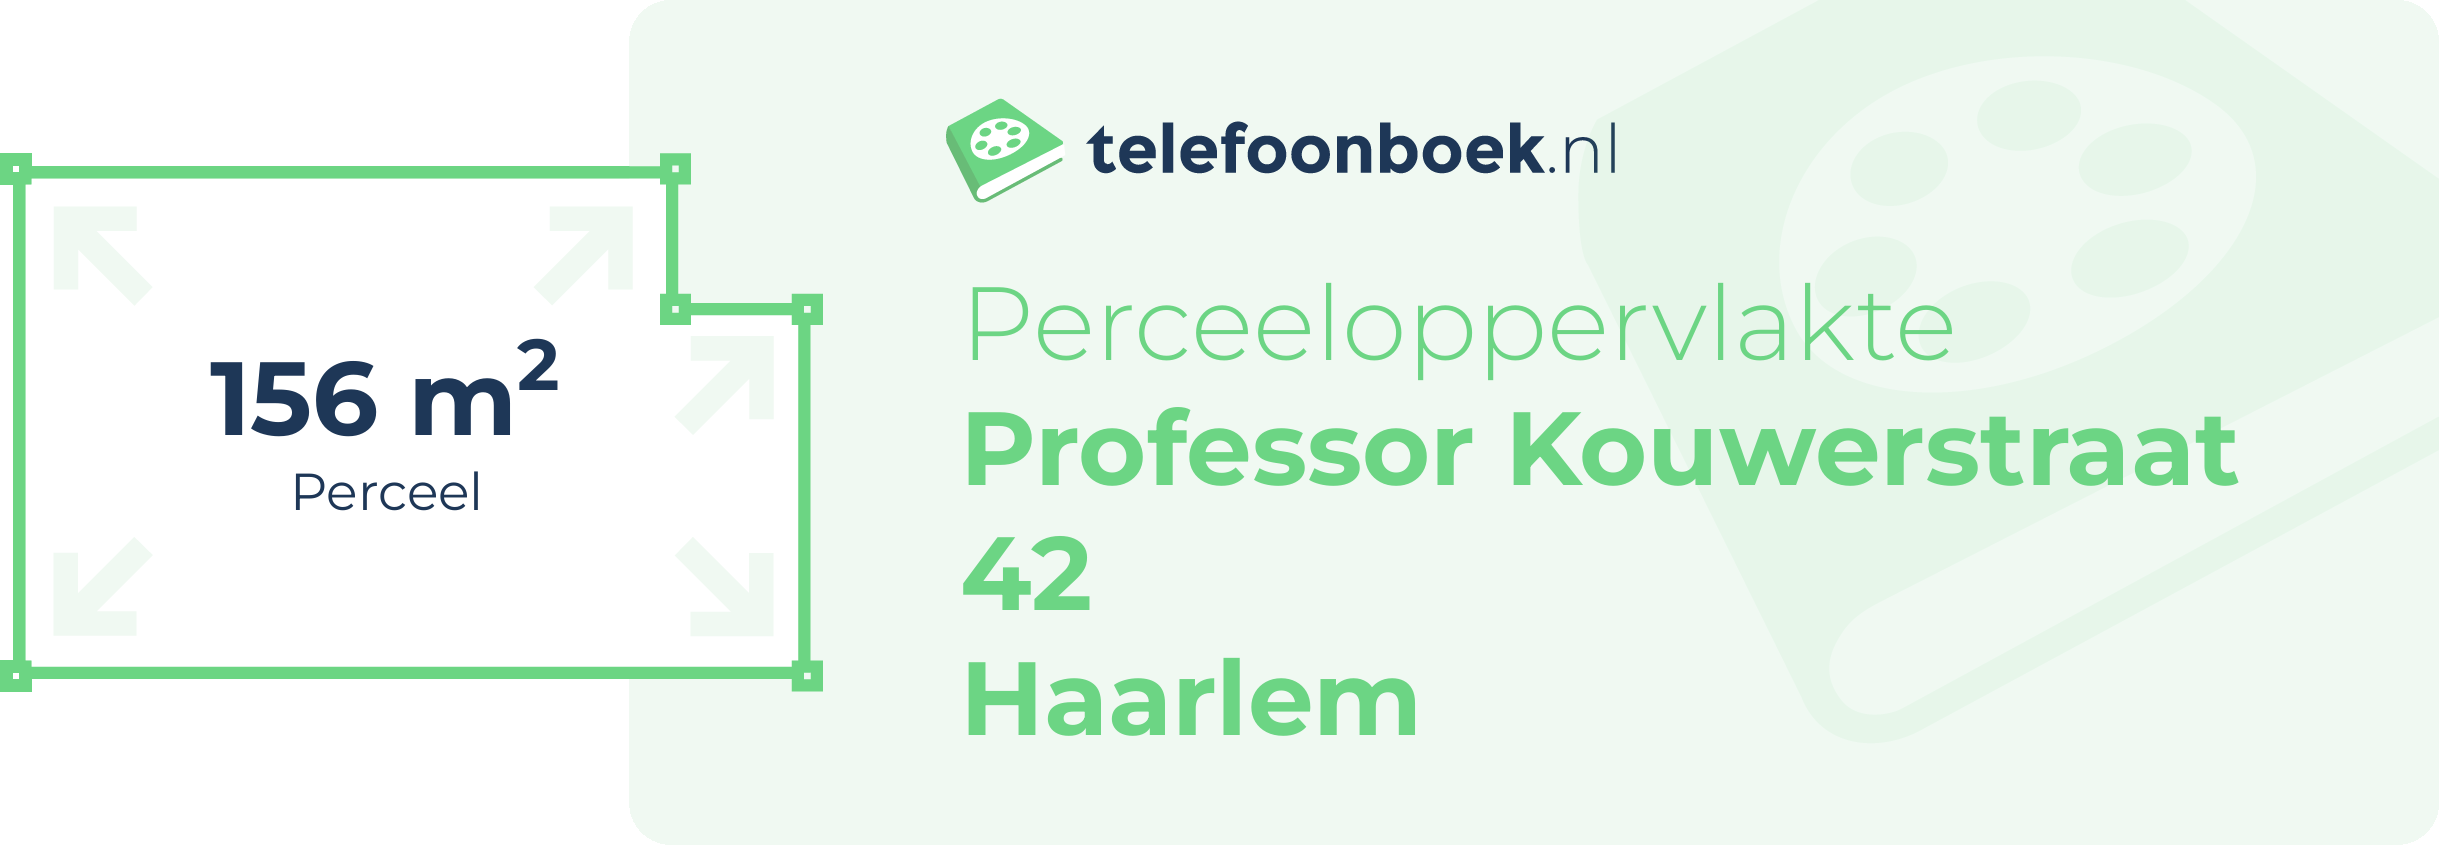 Perceeloppervlakte Professor Kouwerstraat 42 Haarlem